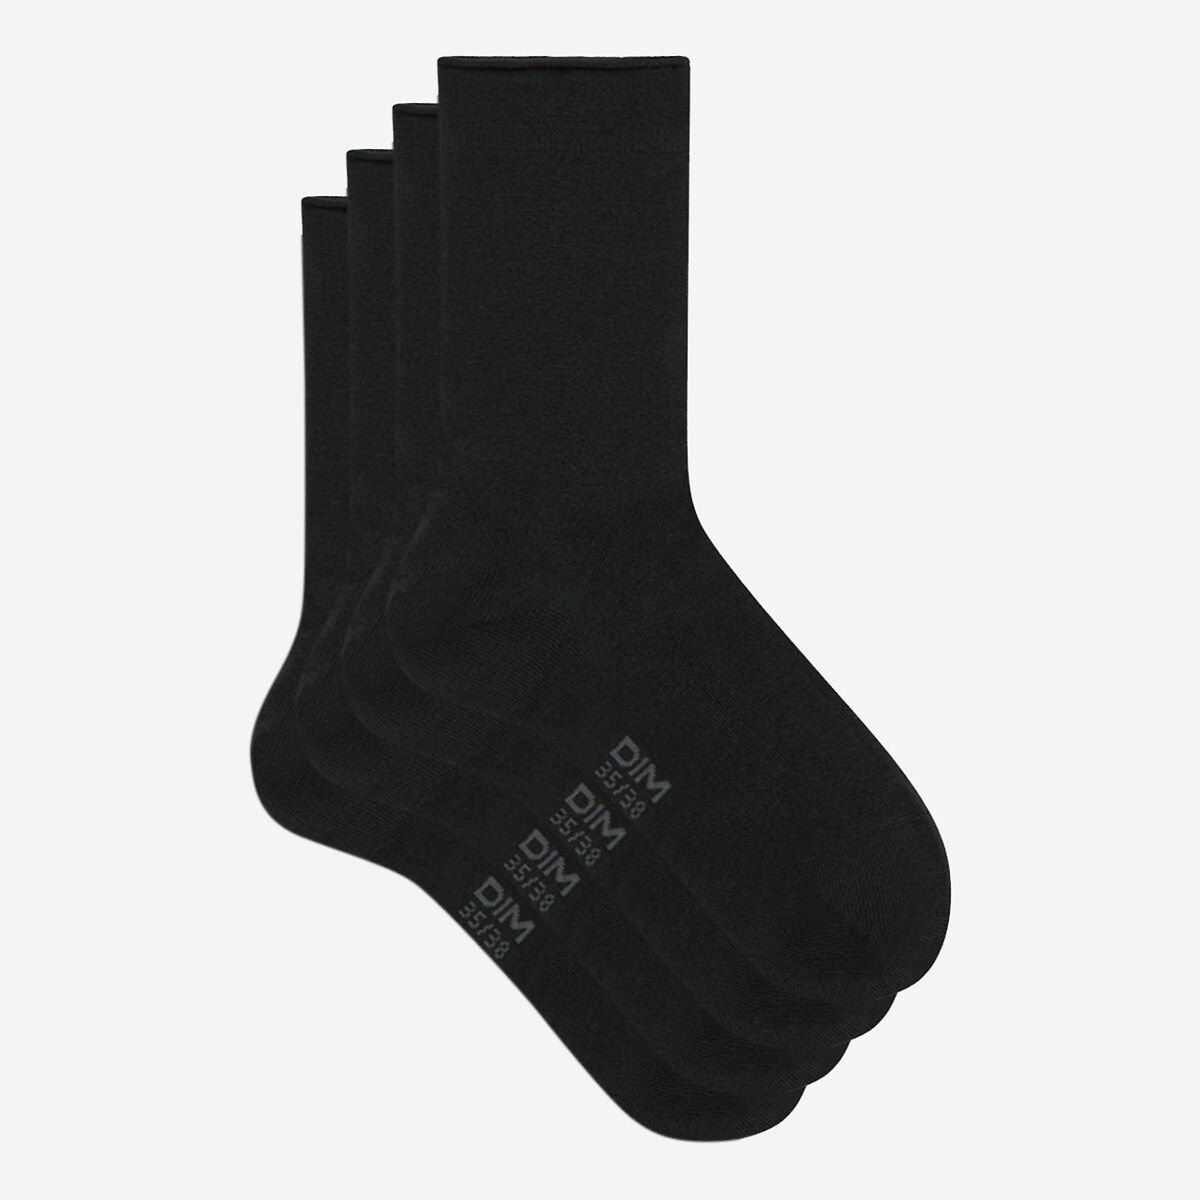 Σετ 2 ζευγάρια κάλτσες από μοντάλ